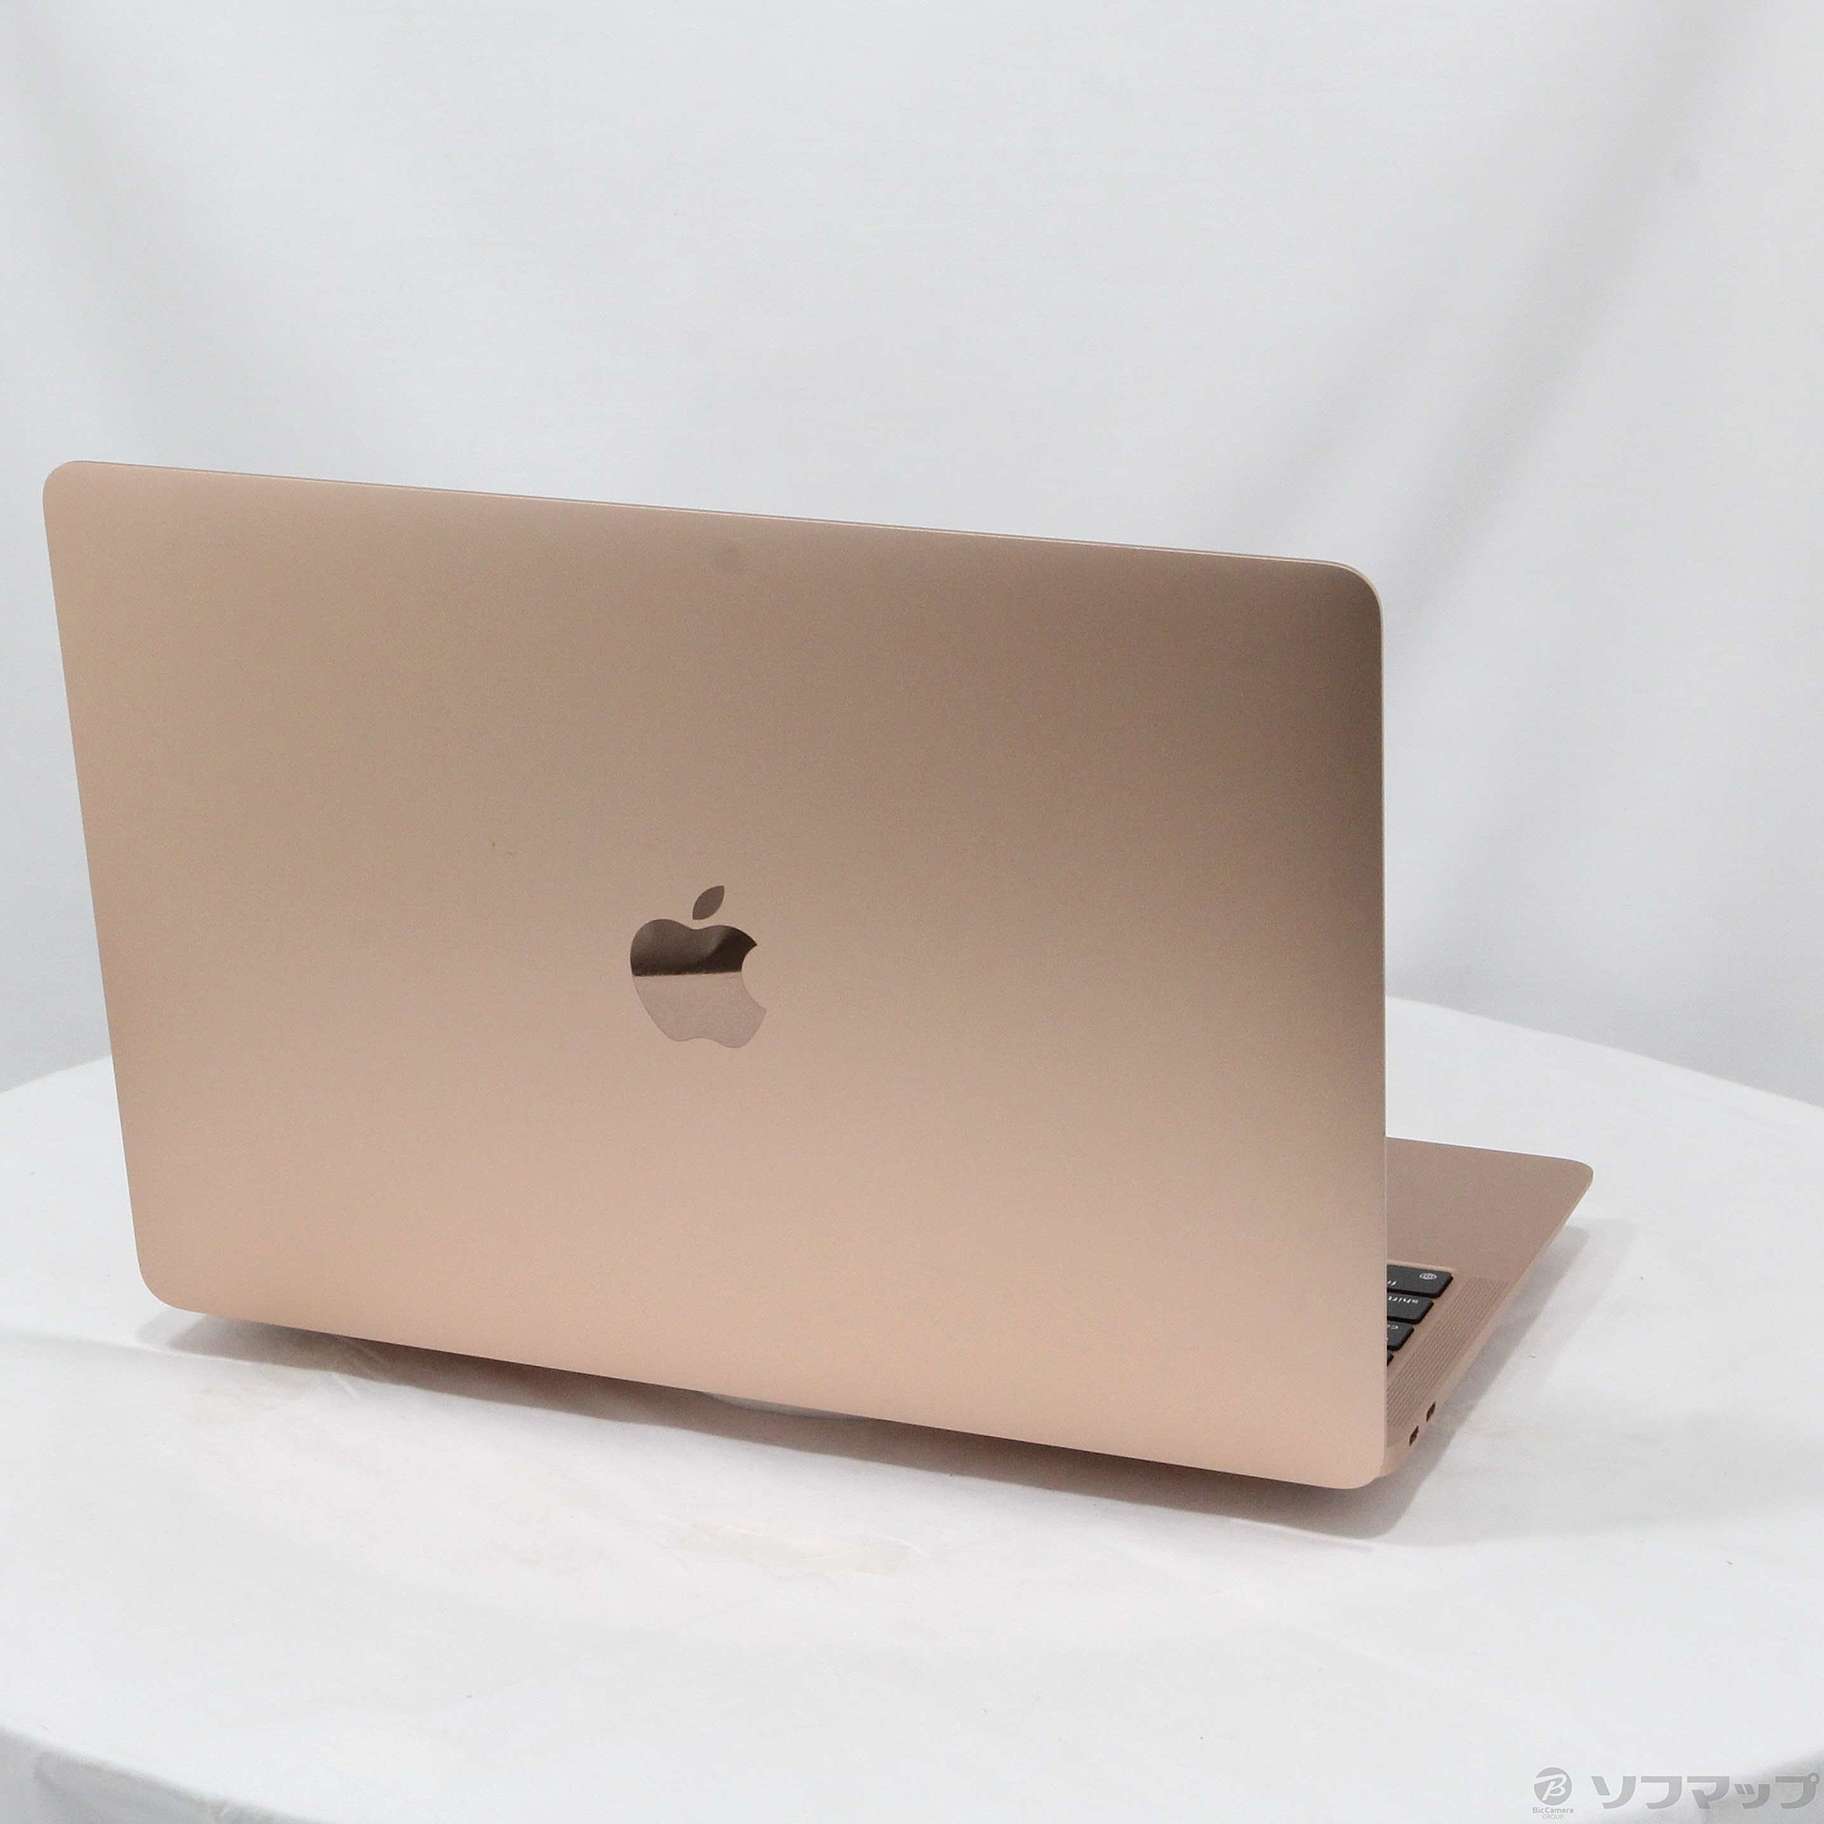 【超激得人気】m1 macbook air メモリ8G SSD256 バッテリー最大容量96% MacBook本体